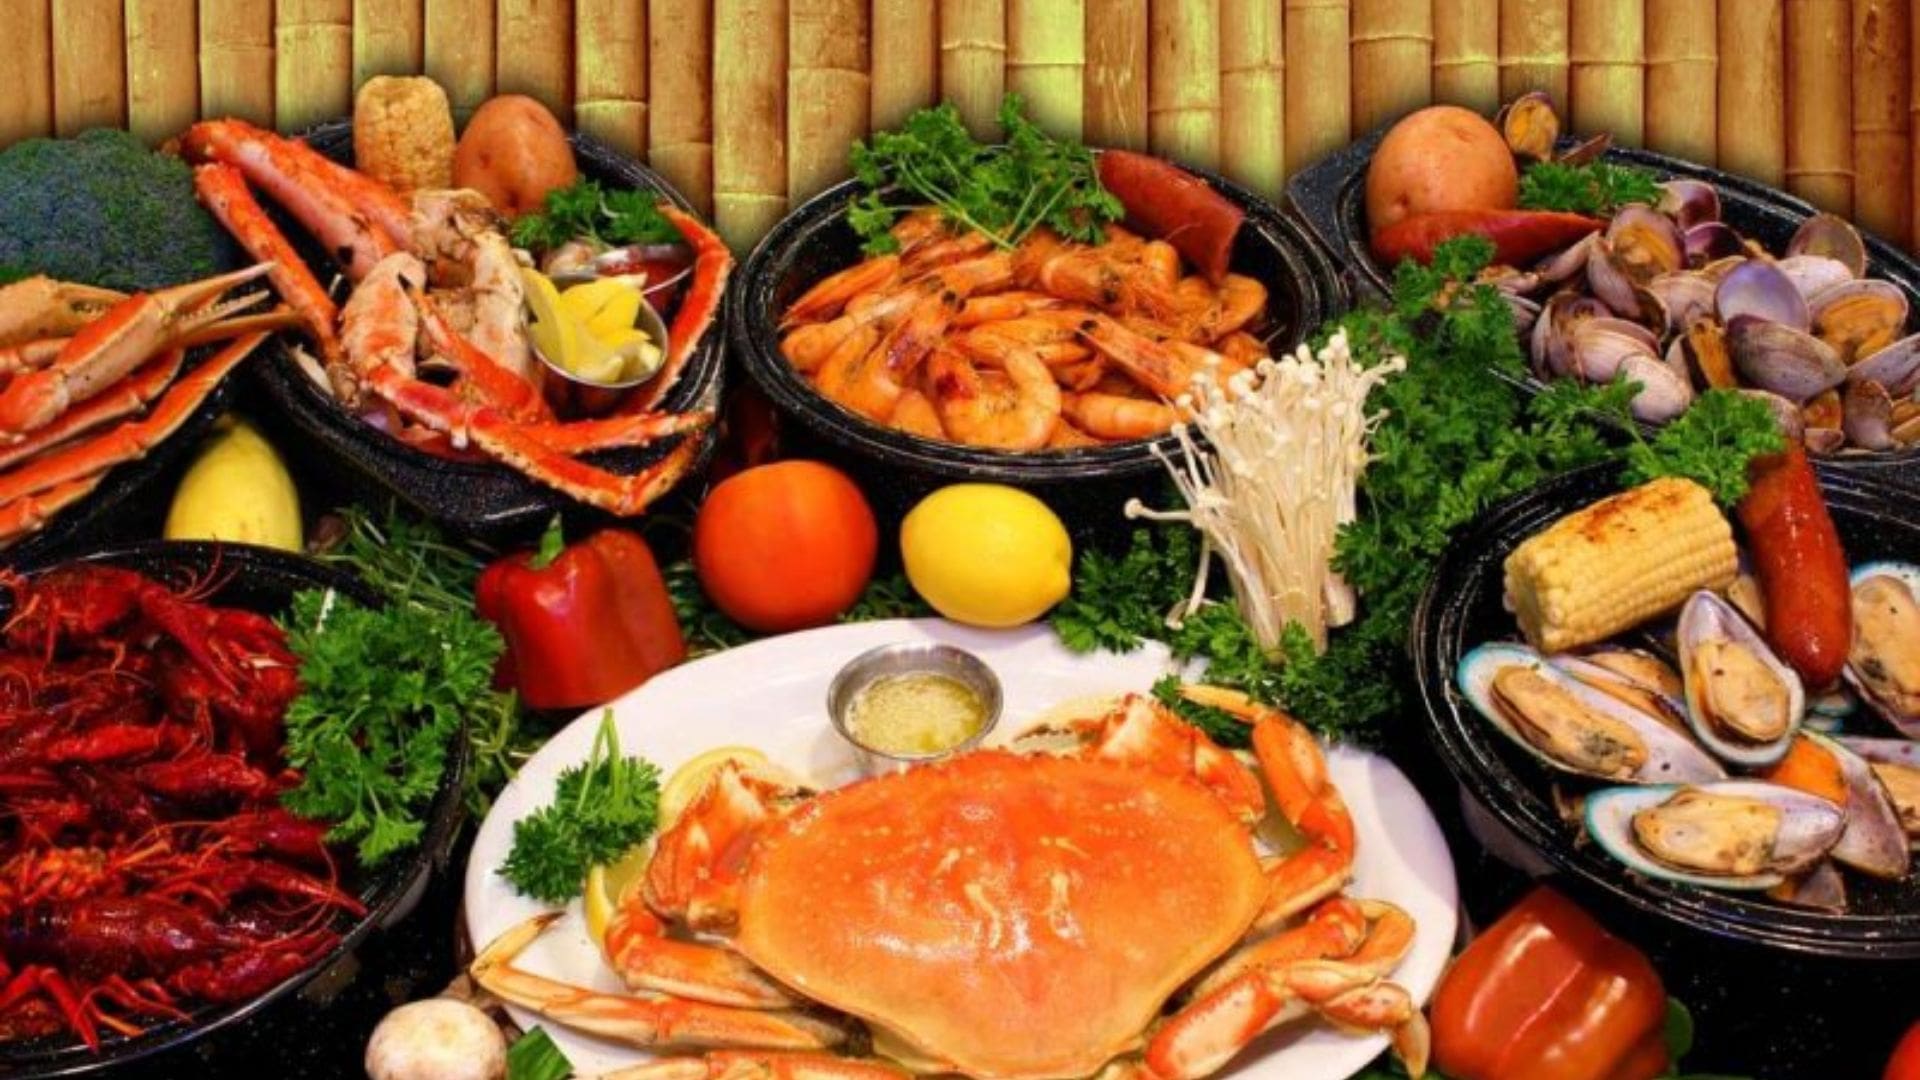 Đà Thành Quán - Địa điểm nhà hàng hải sản Đà Nẵng nổi tiếng